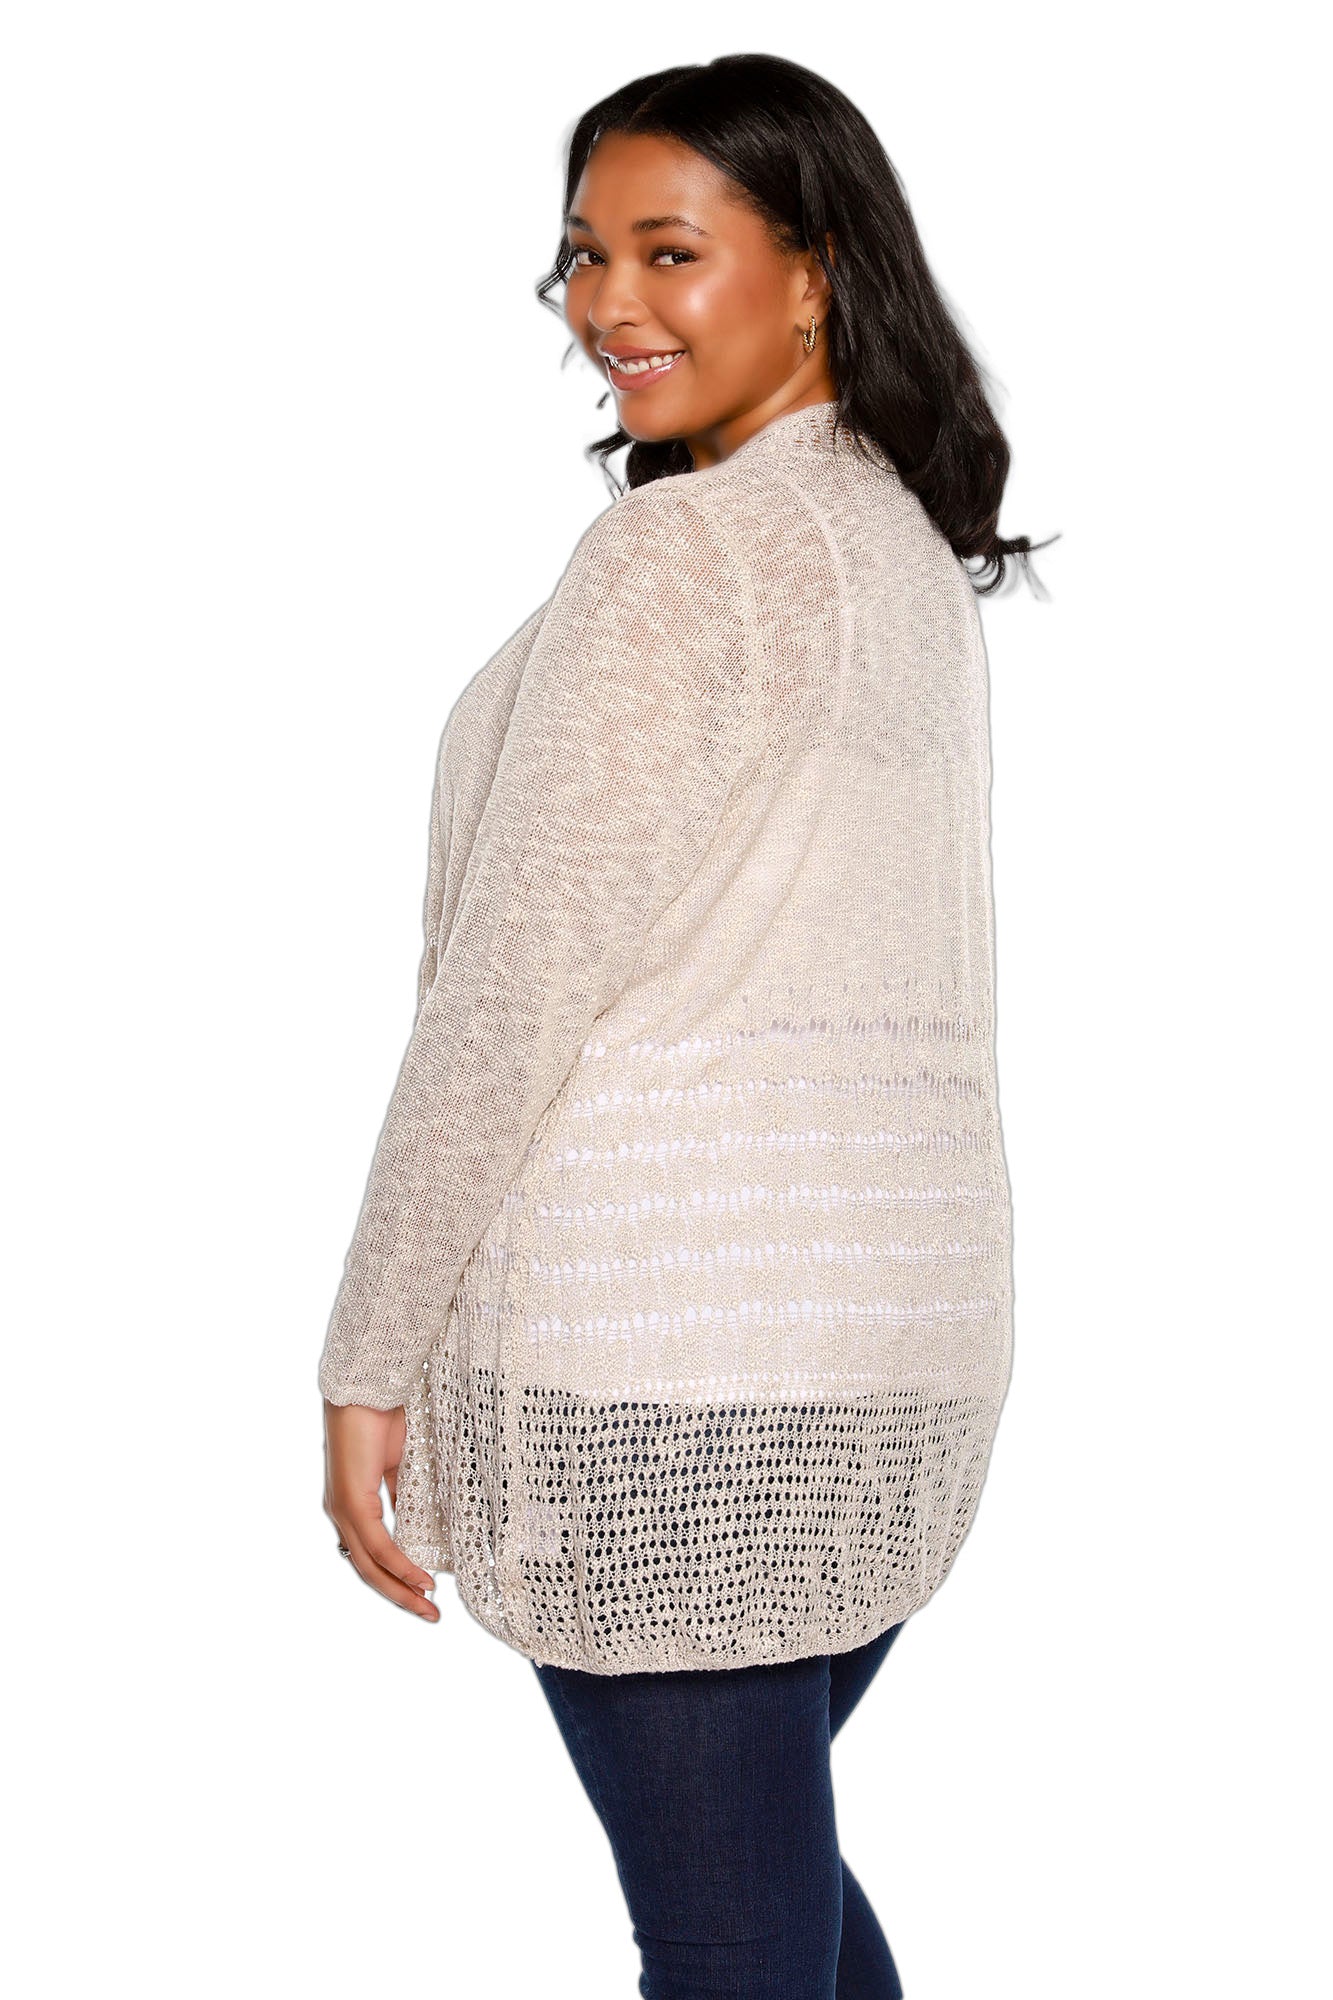 Women's Plus Size Crochet Cardigan Lightweight Long Sleeve Open Front